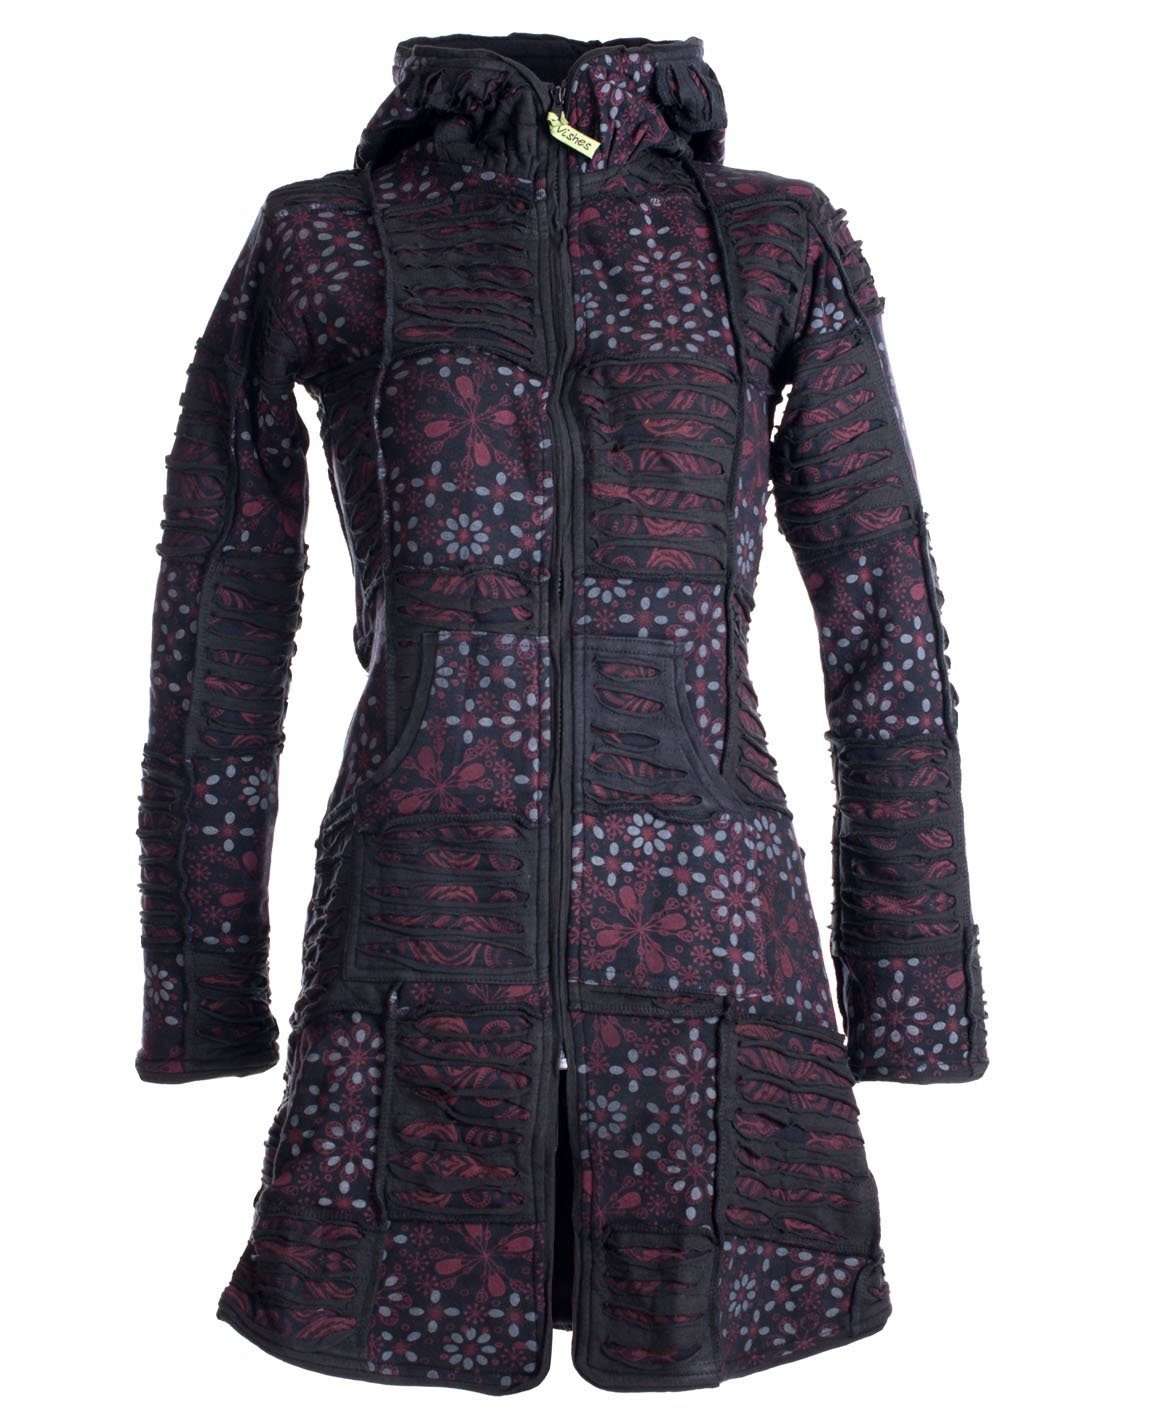 Короткое пальто в стиле пэчворк с ажурной вышивкой на флисовой подкладке в стиле хиппи